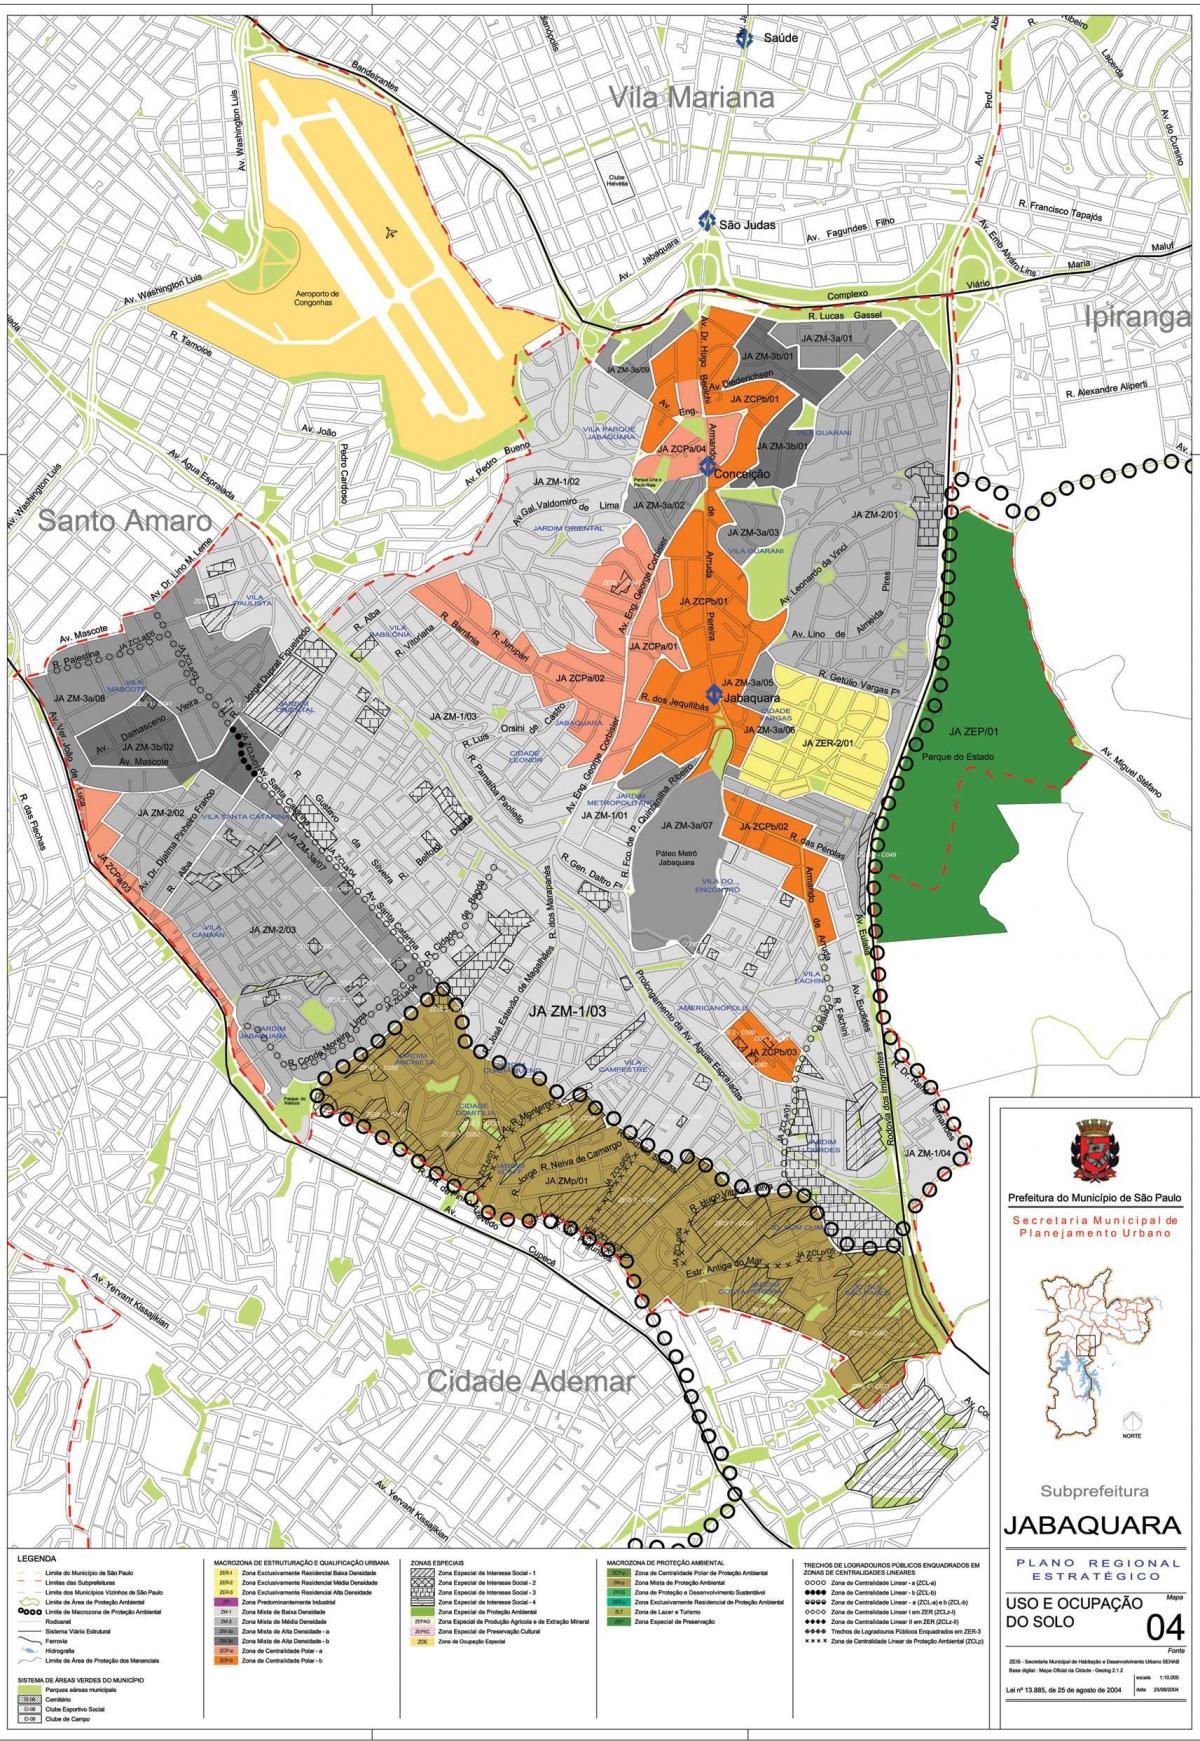 Kort over Jabaquara São Paulo - Besættelse af jord